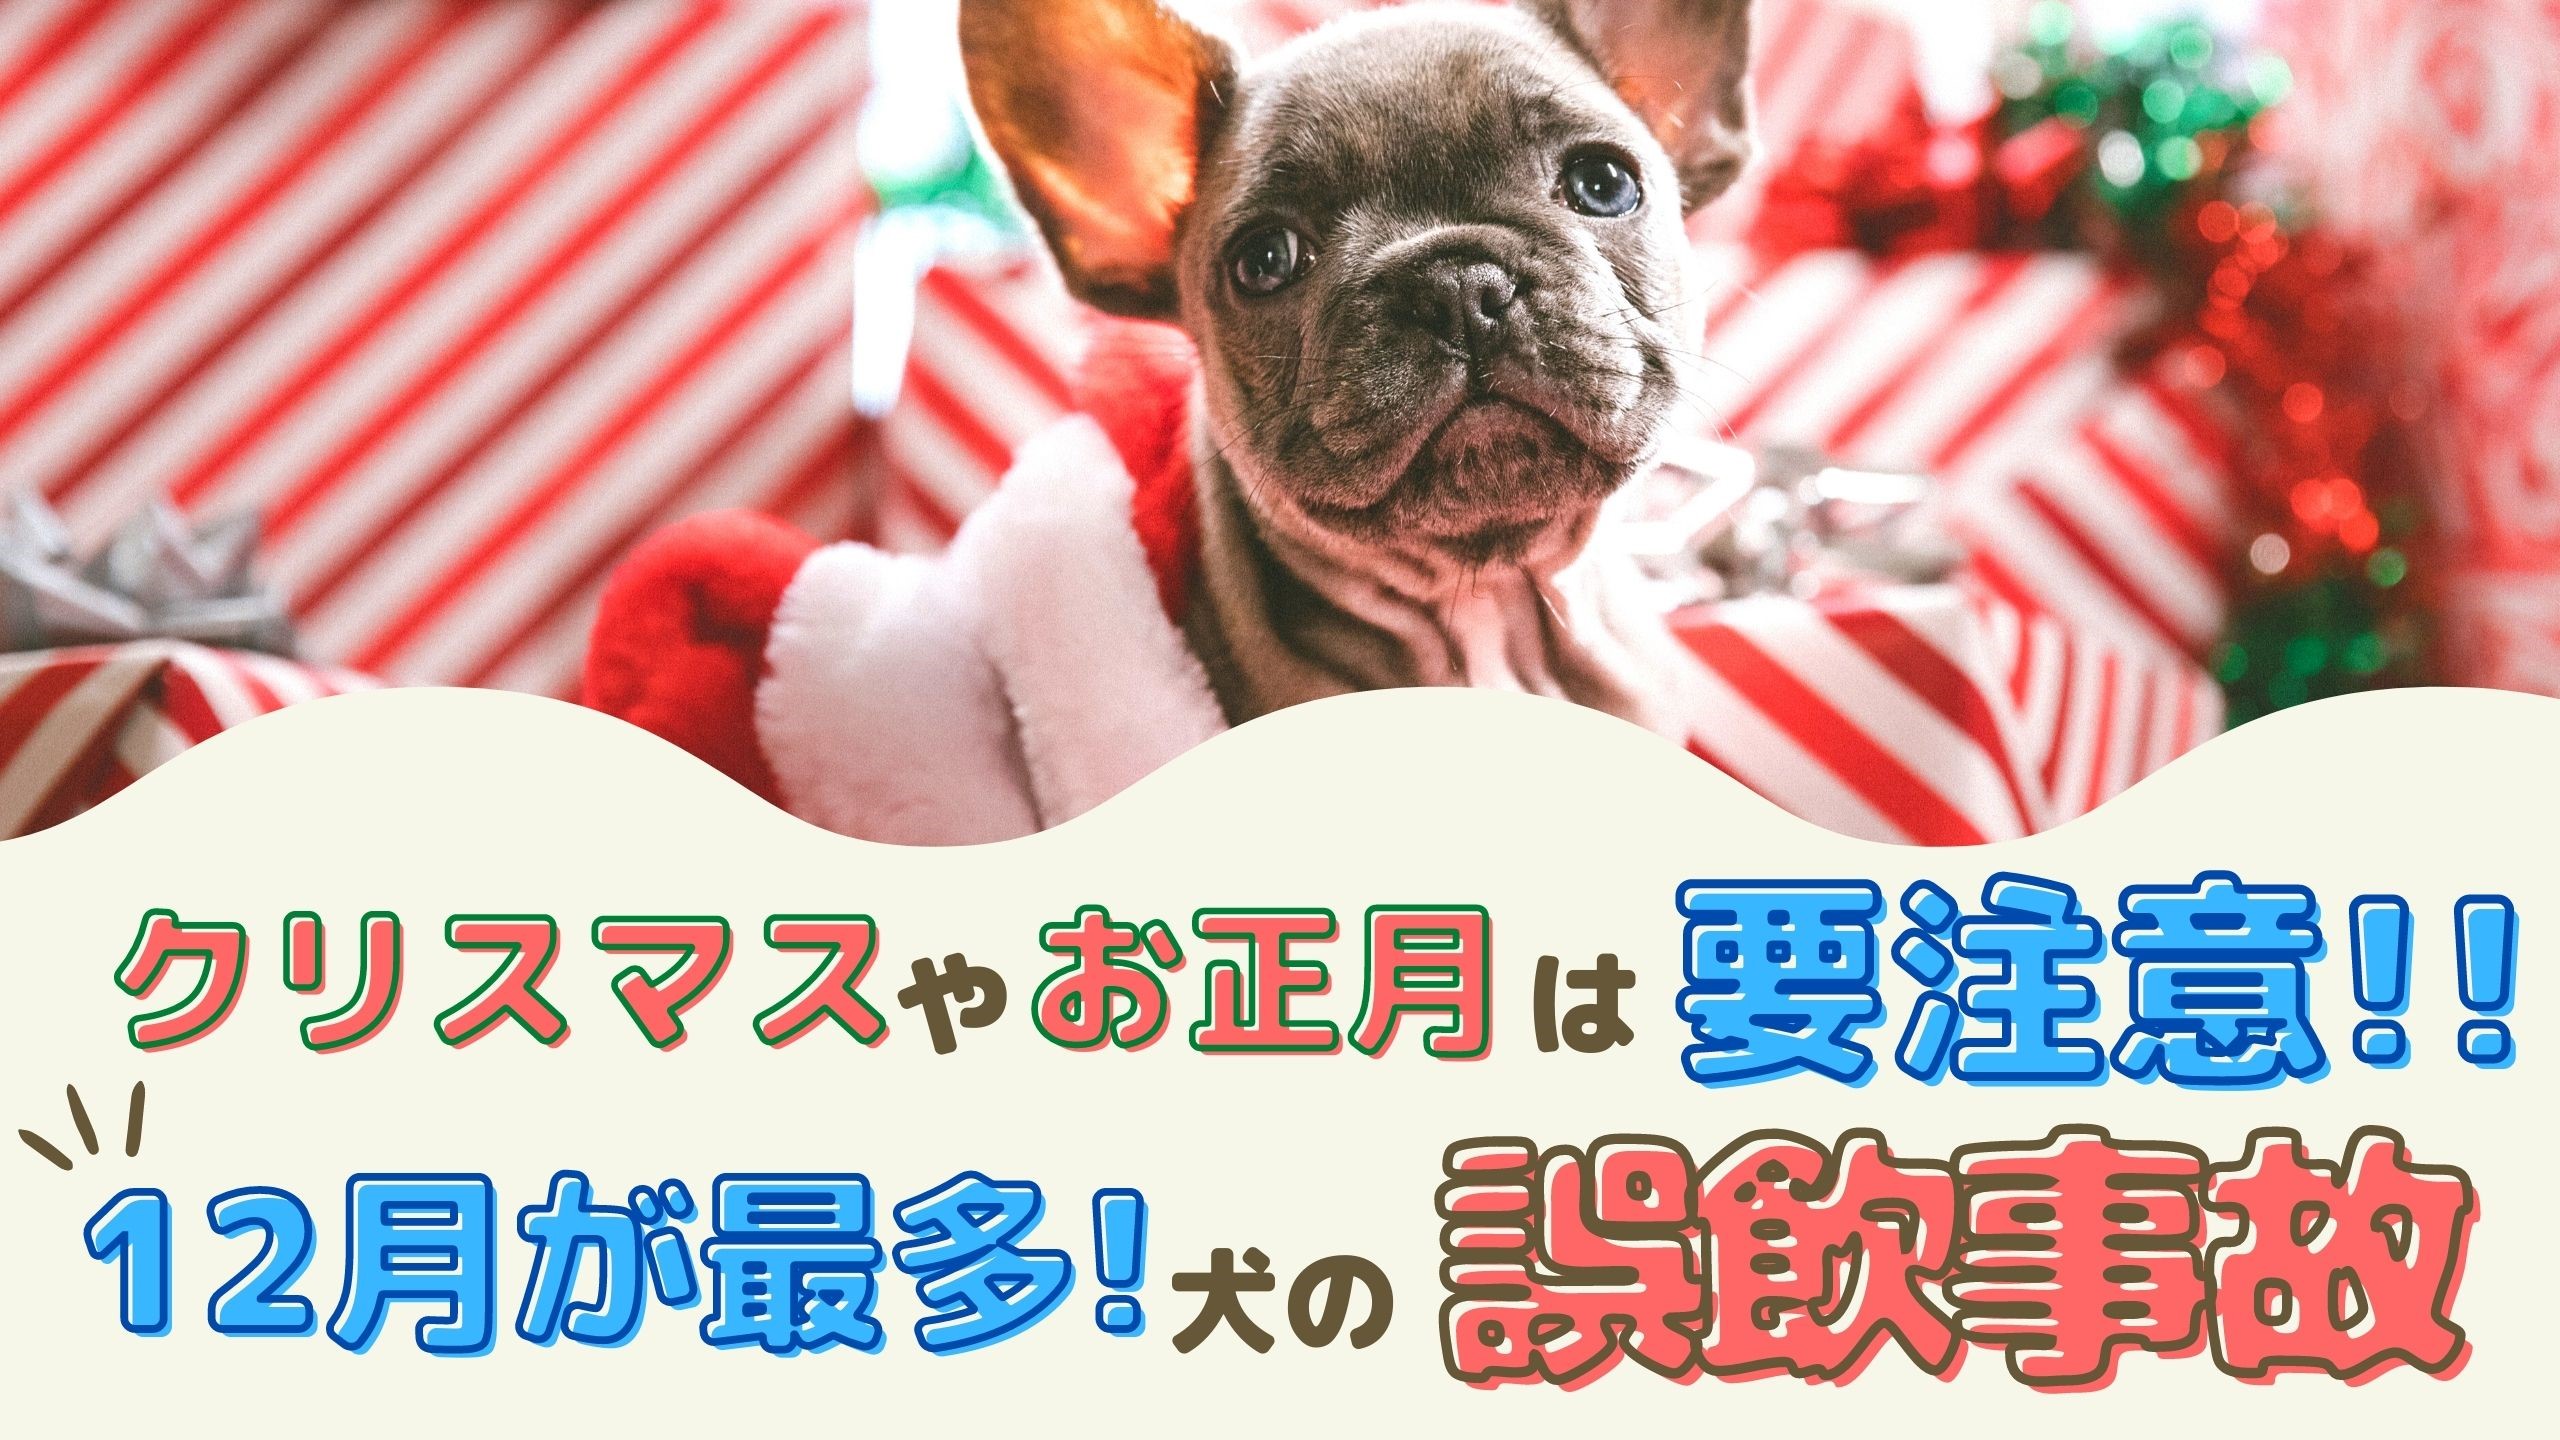 クリスマスやお正月は要注意 12月が最多 犬の誤飲事故 動物看護師が解説 愛犬との旅行ならイヌトミィ